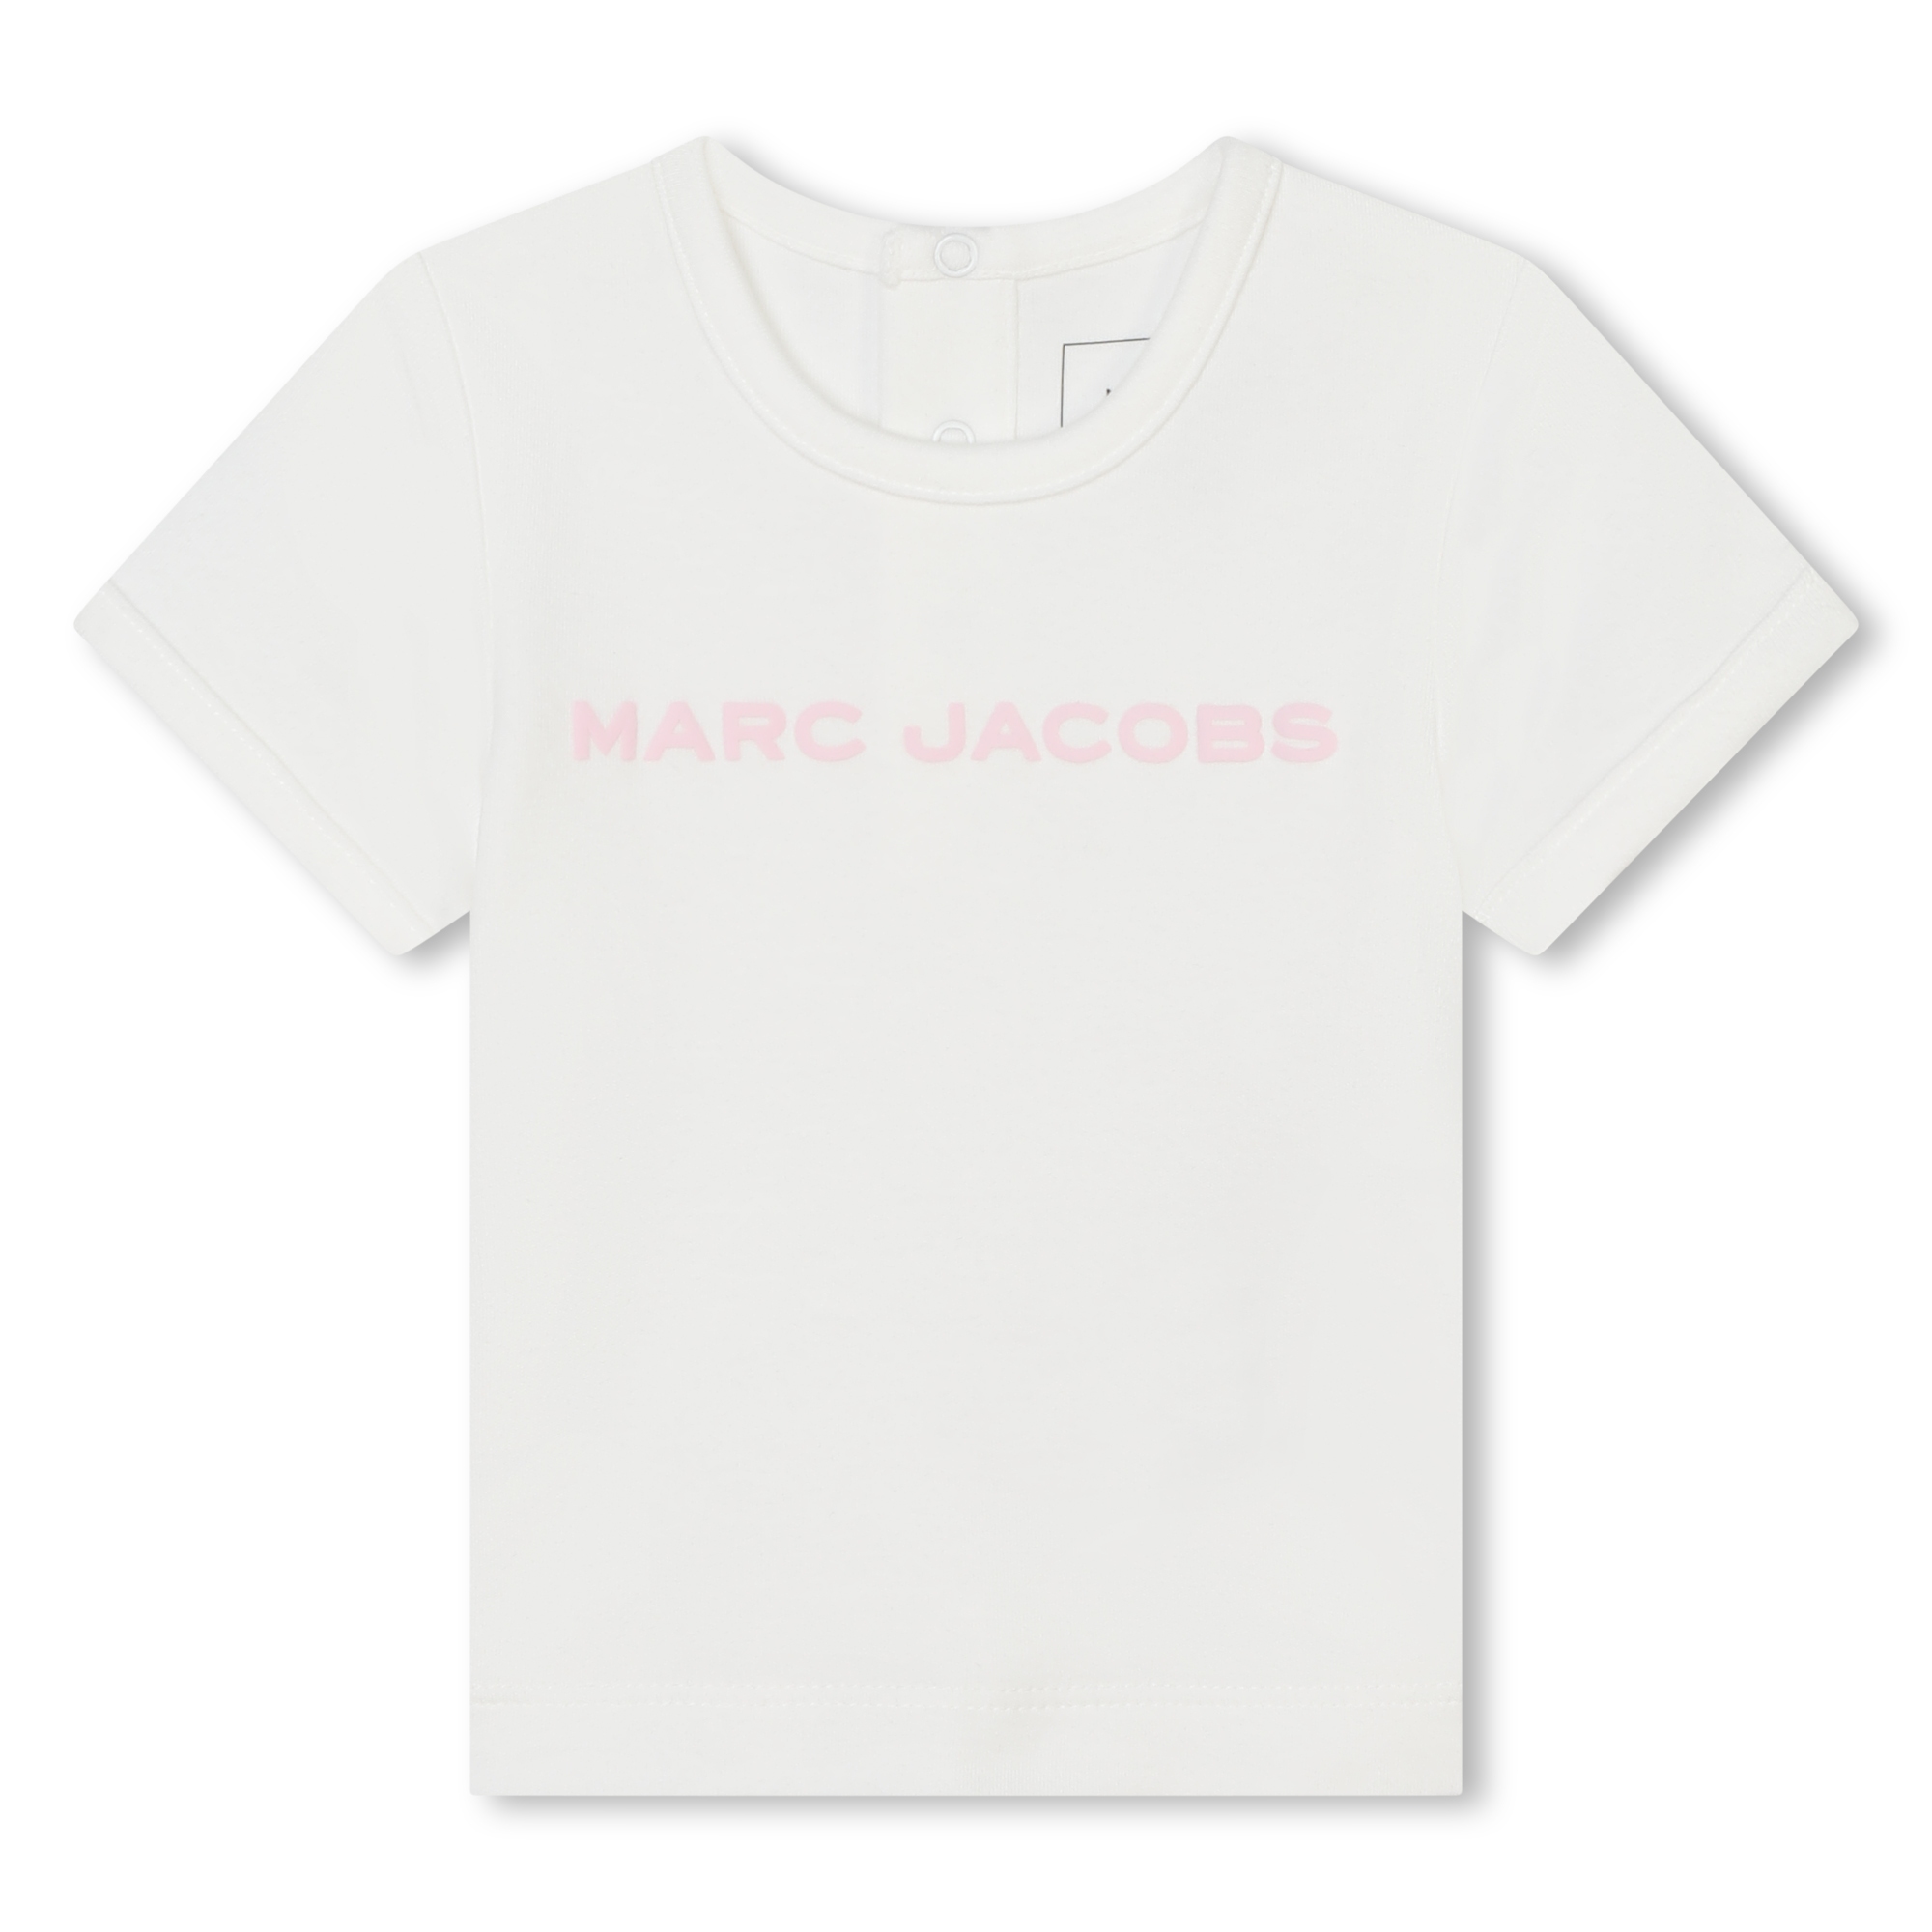 Katoenen T-shirt en short MARC JACOBS Voor